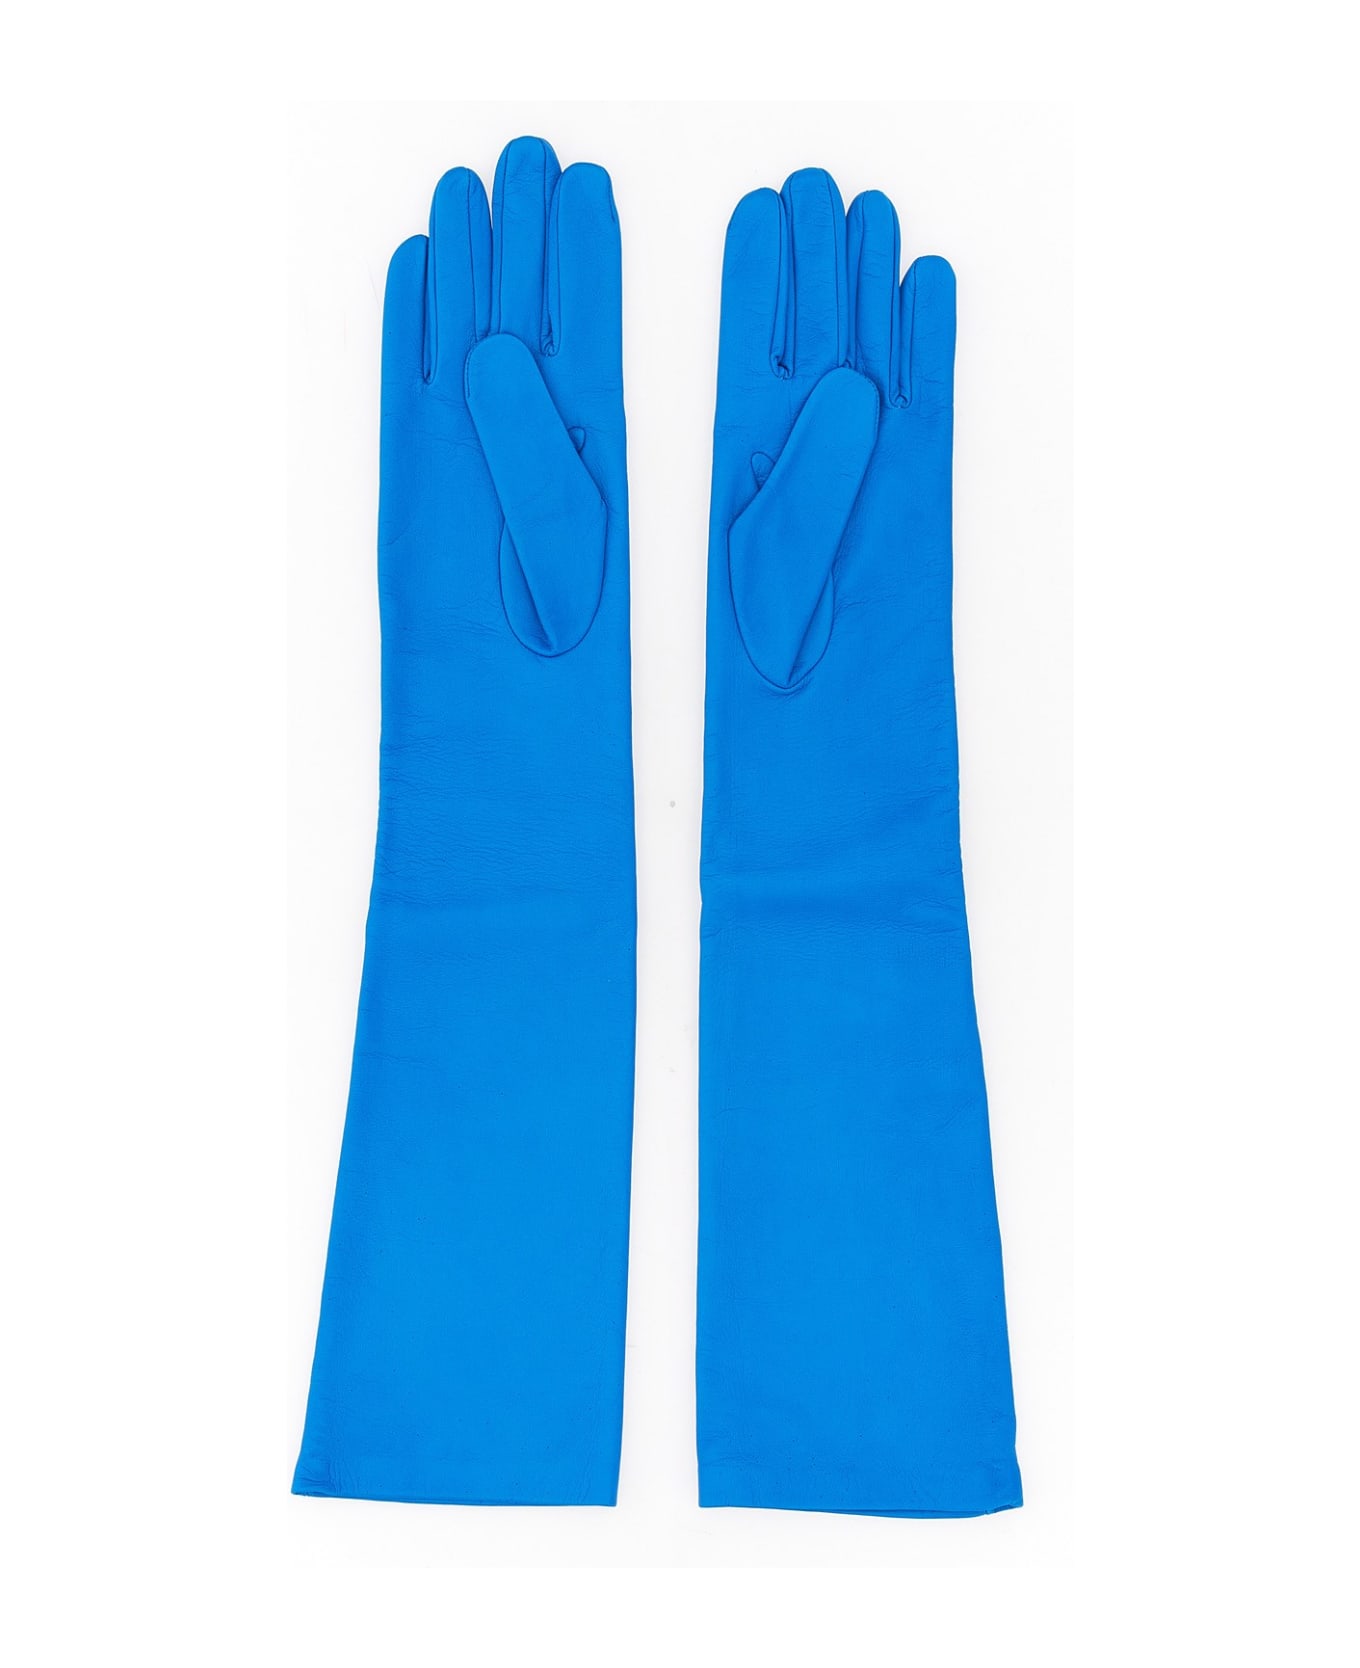 Maison Margiela Leather Gloves - BLU